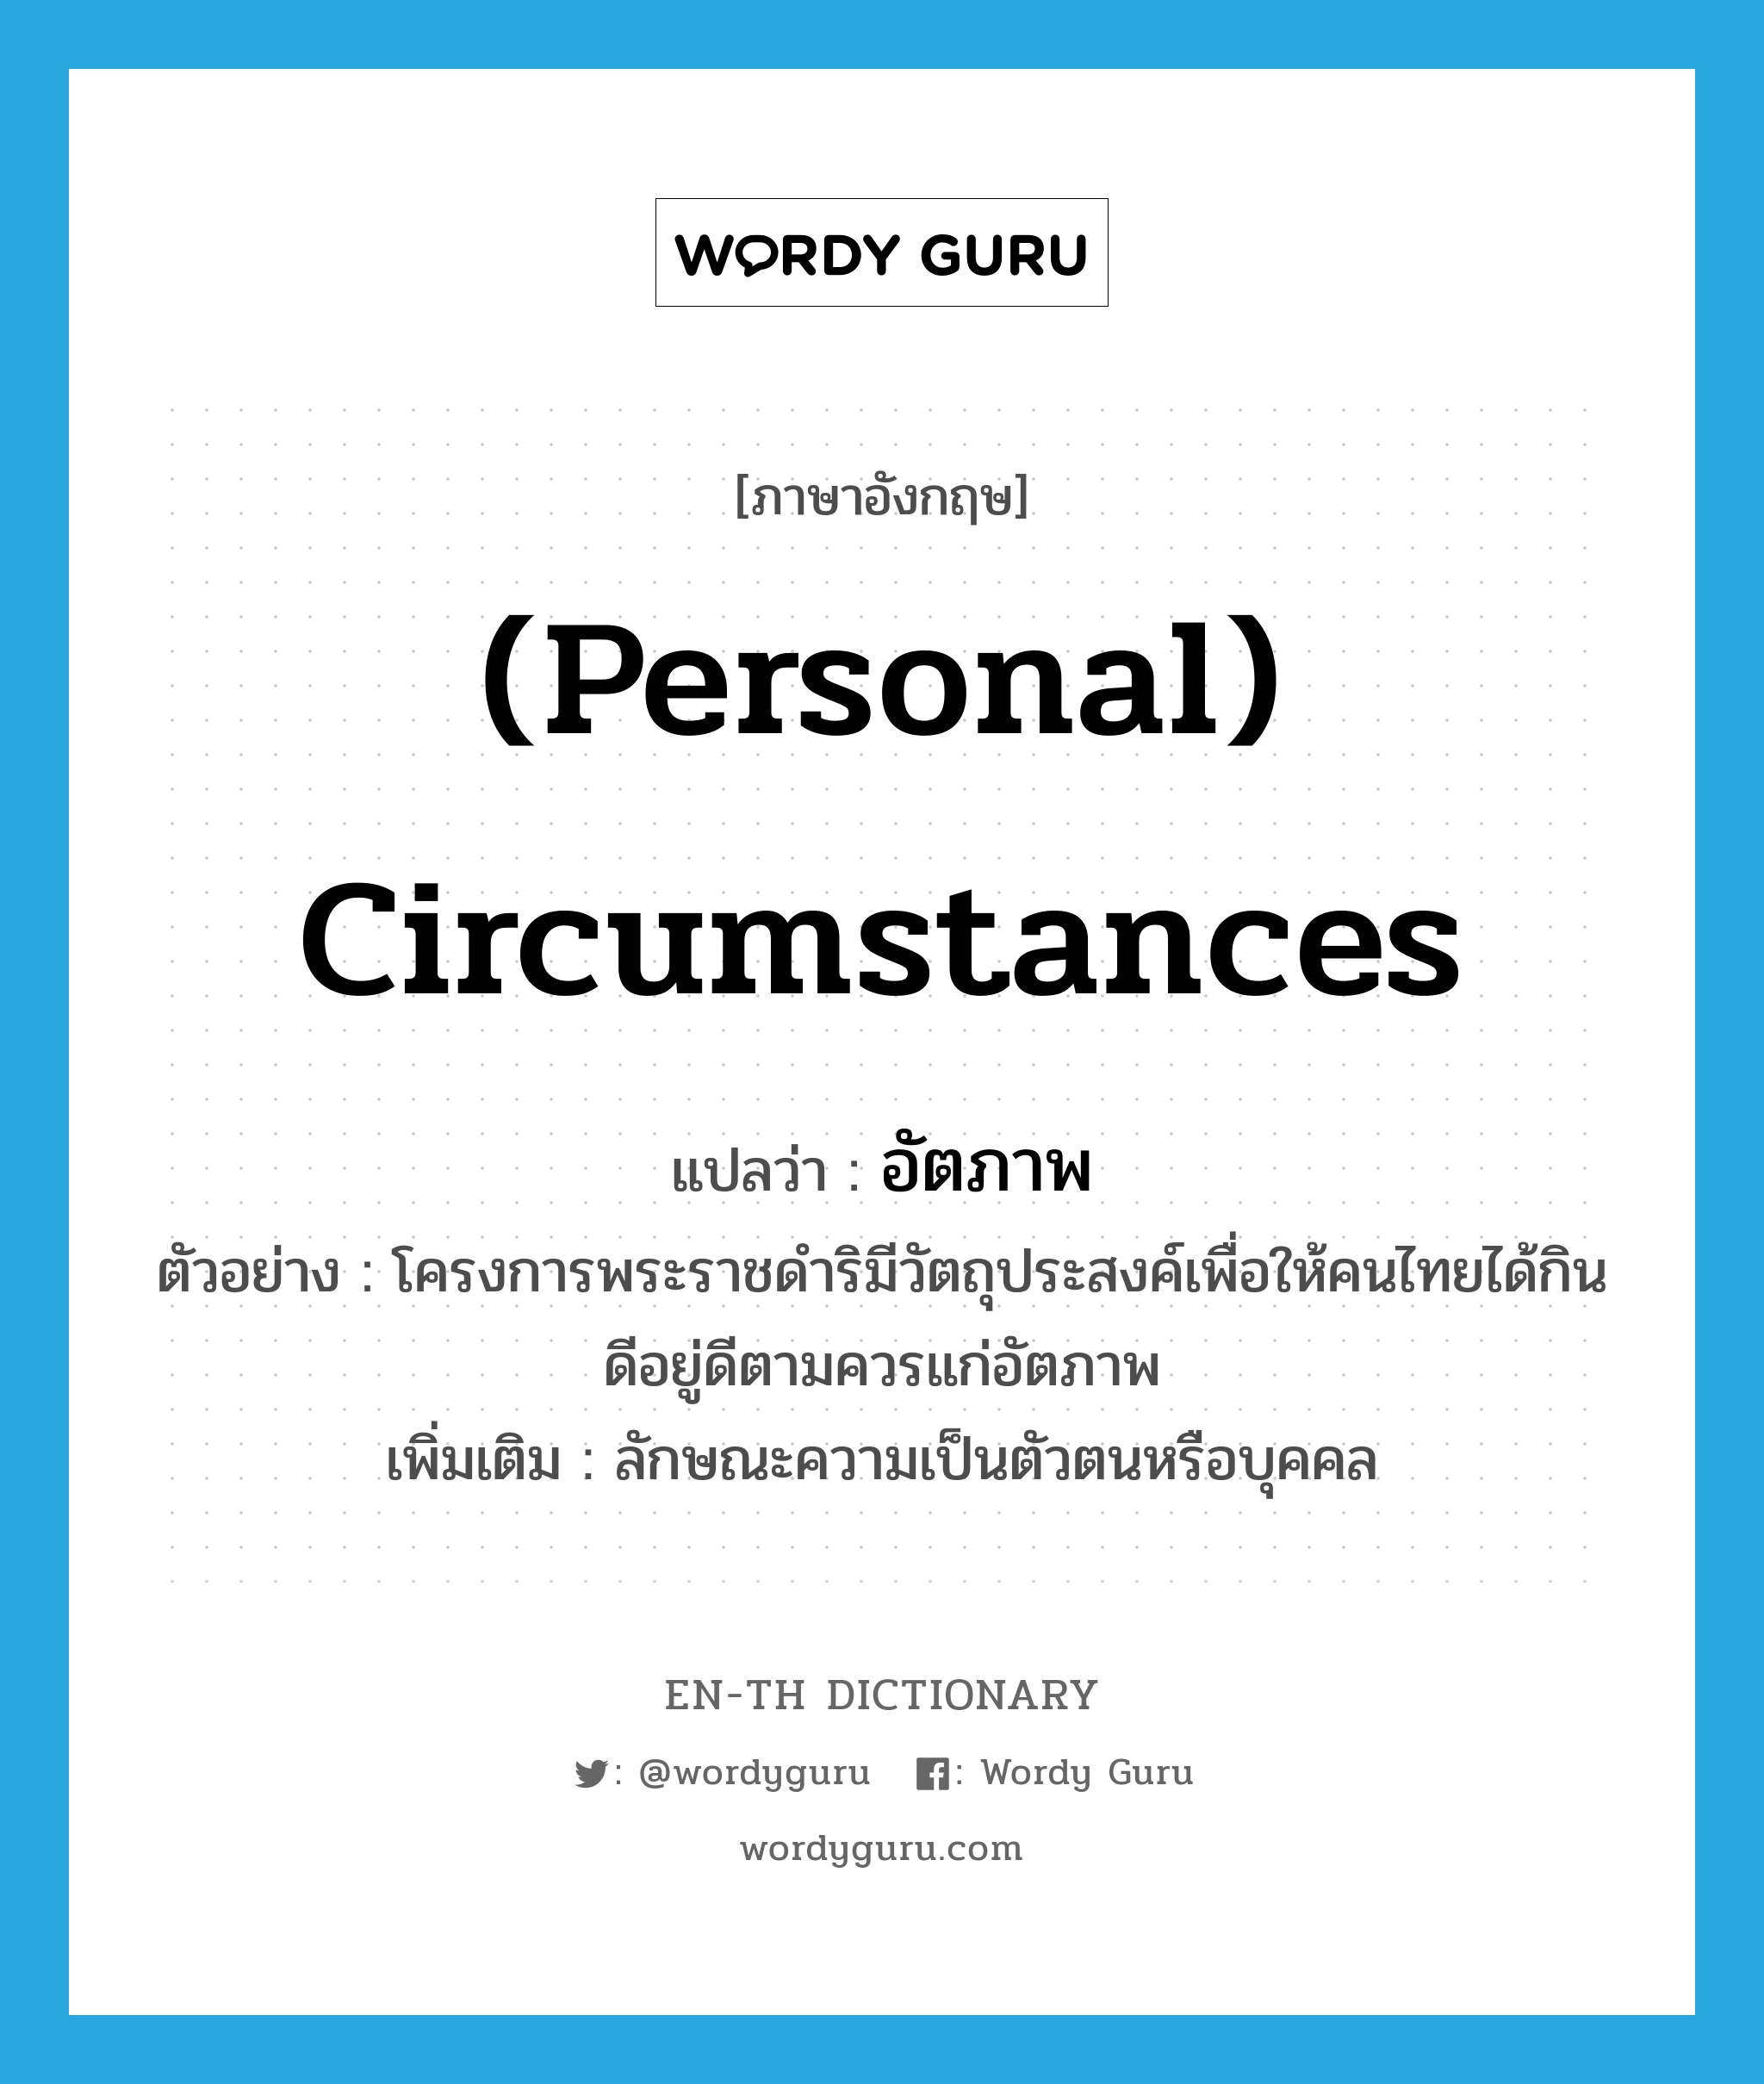 (personal) circumstances แปลว่า?, คำศัพท์ภาษาอังกฤษ (personal) circumstances แปลว่า อัตภาพ ประเภท N ตัวอย่าง โครงการพระราชดำริมีวัตถุประสงค์เพื่อให้คนไทยได้กินดีอยู่ดีตามควรแก่อัตภาพ เพิ่มเติม ลักษณะความเป็นตัวตนหรือบุคคล หมวด N